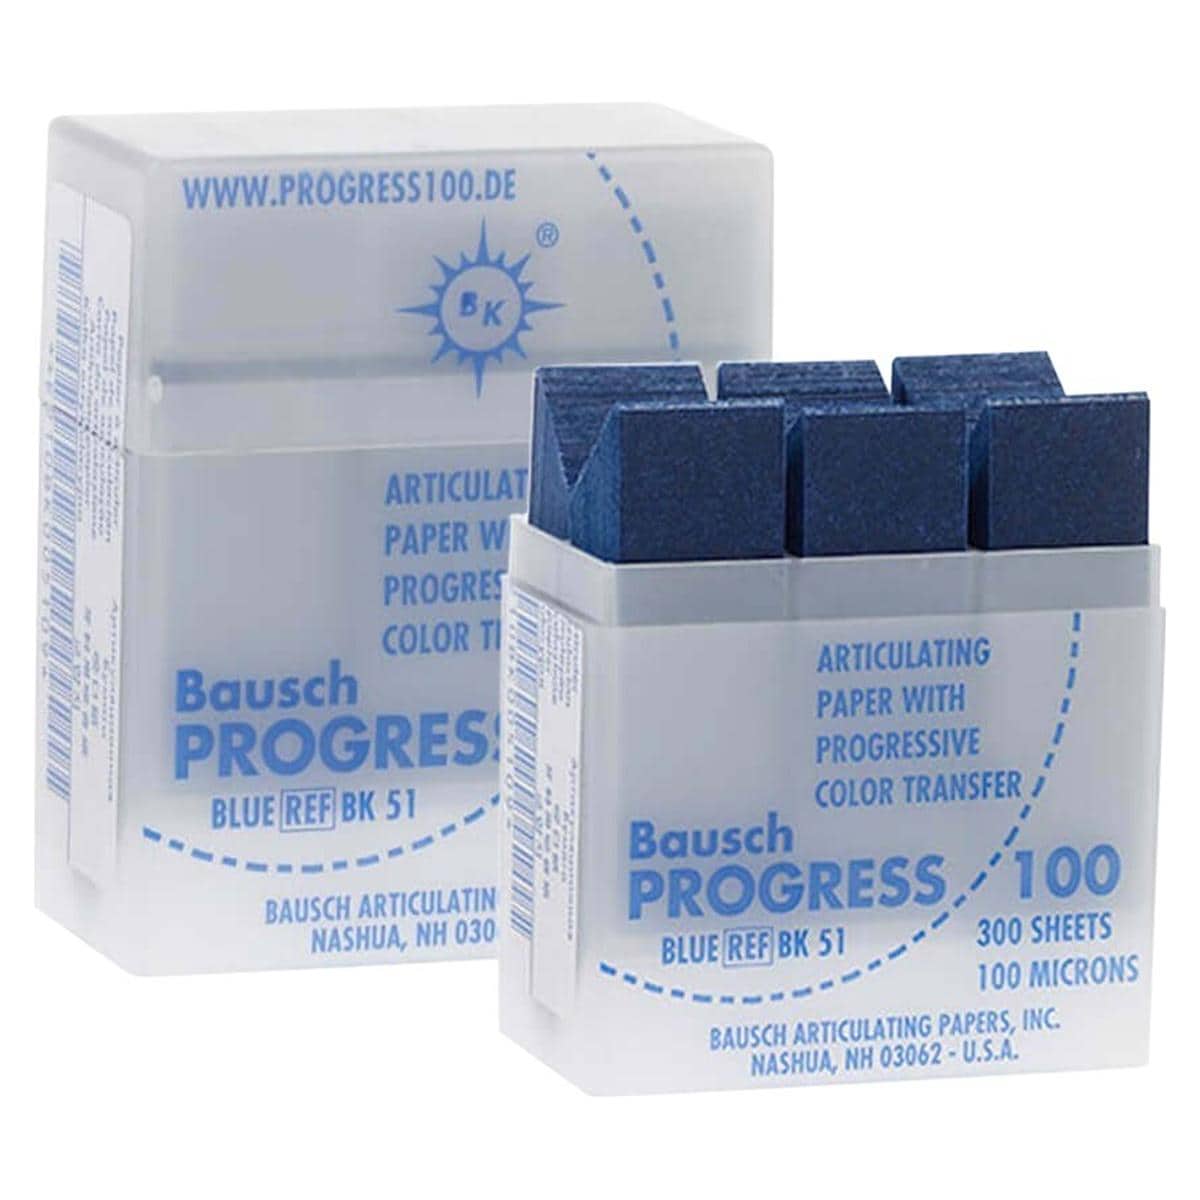 Articulatiepapier Progressive in cassette - Blauw, BK51